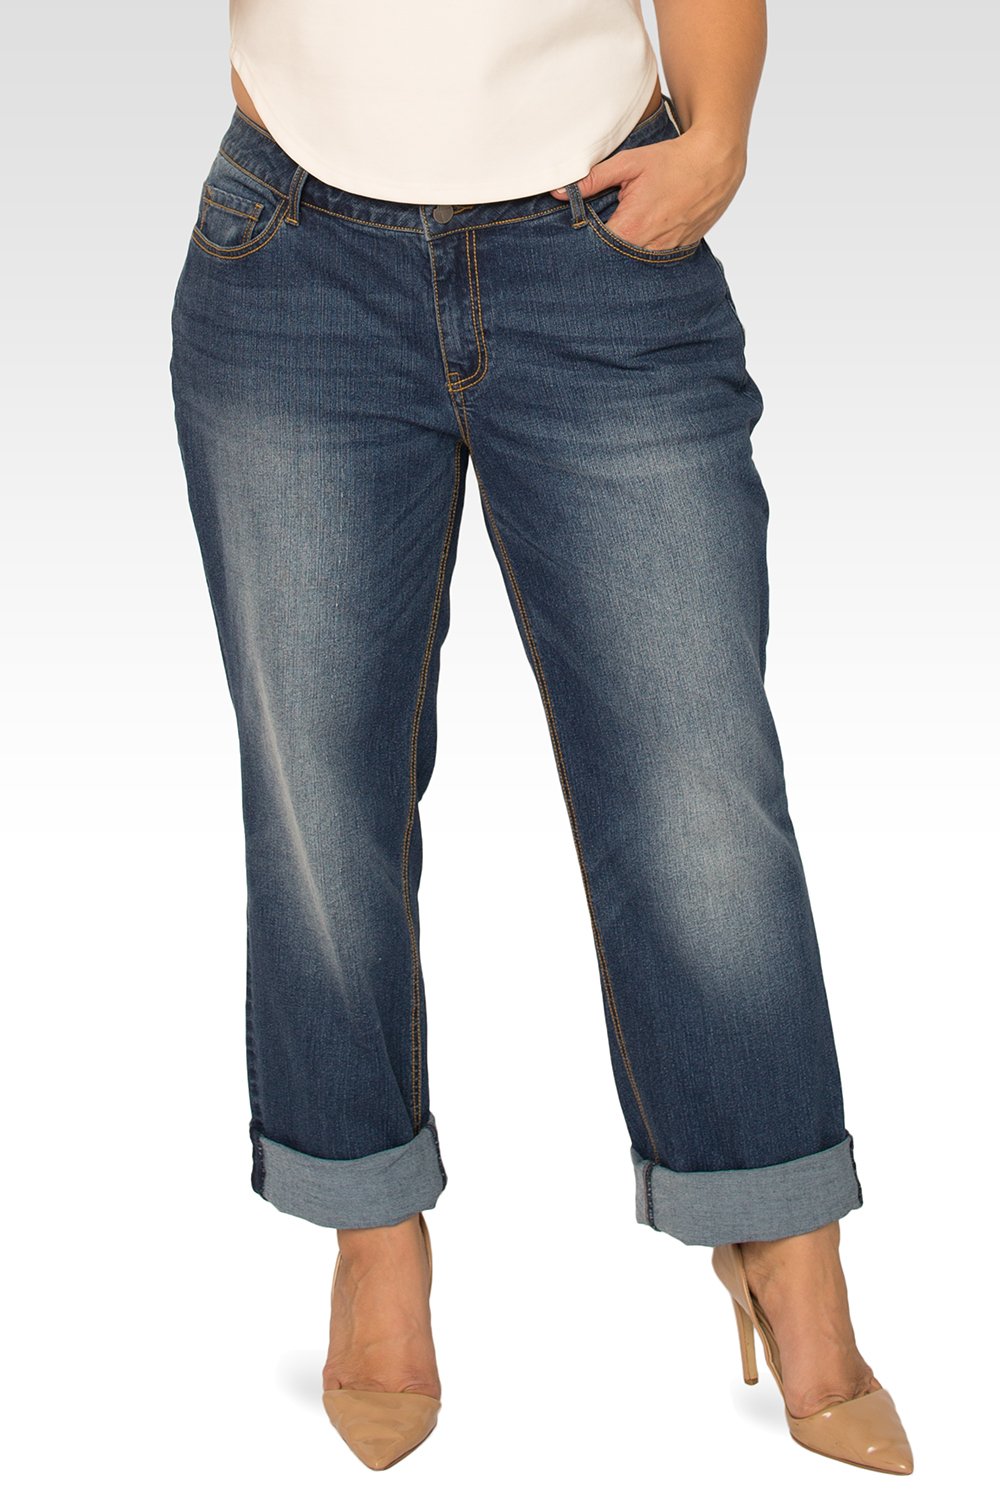 Plus Size Dallas Women's Roll-Up Hem Boyfriend Jeans